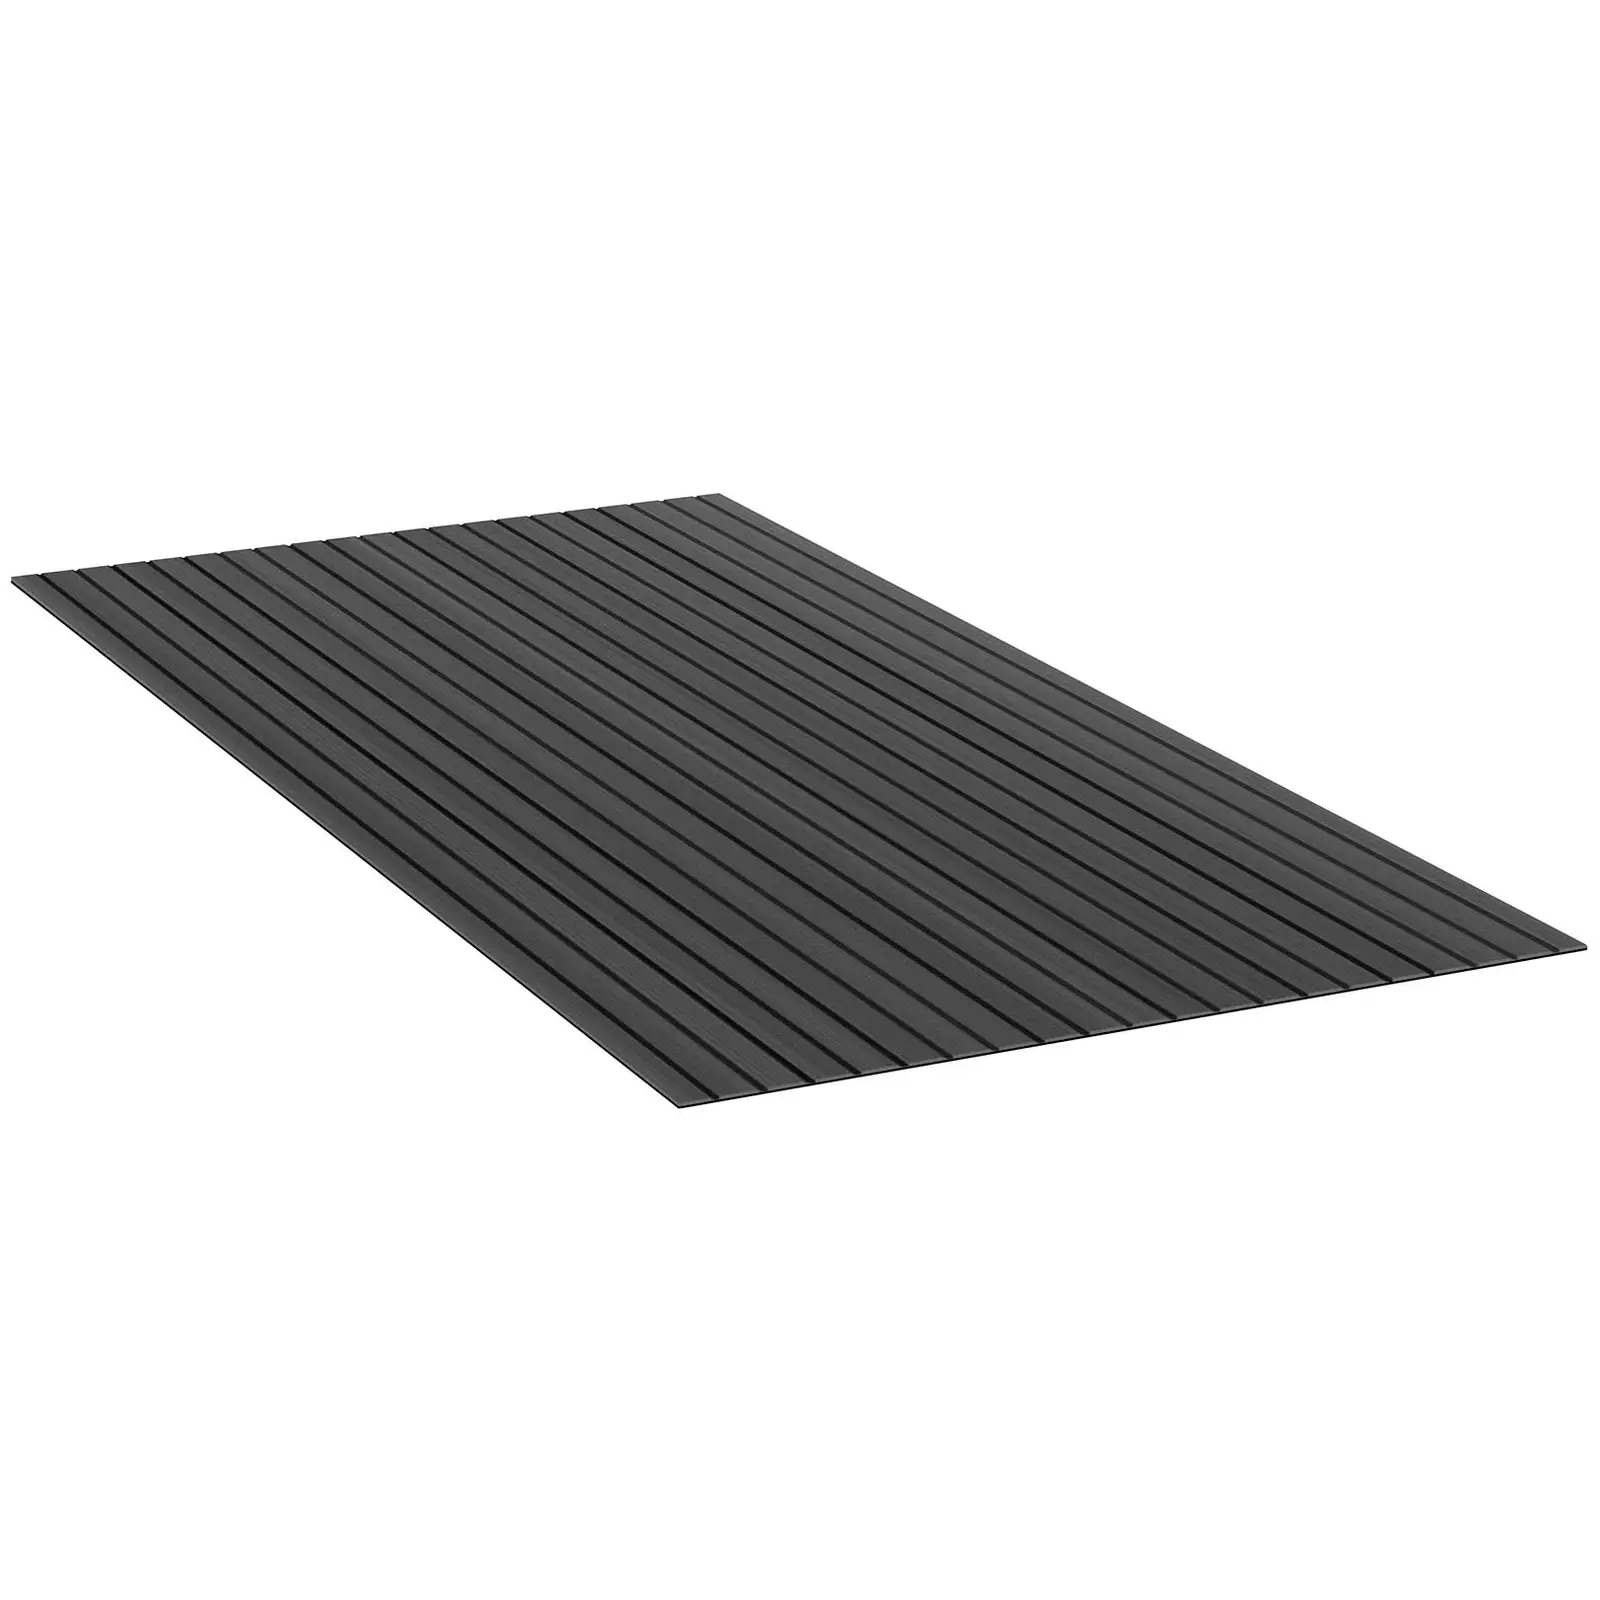 Podele pentru bărci - 240 x 120 cm - antracit/negru